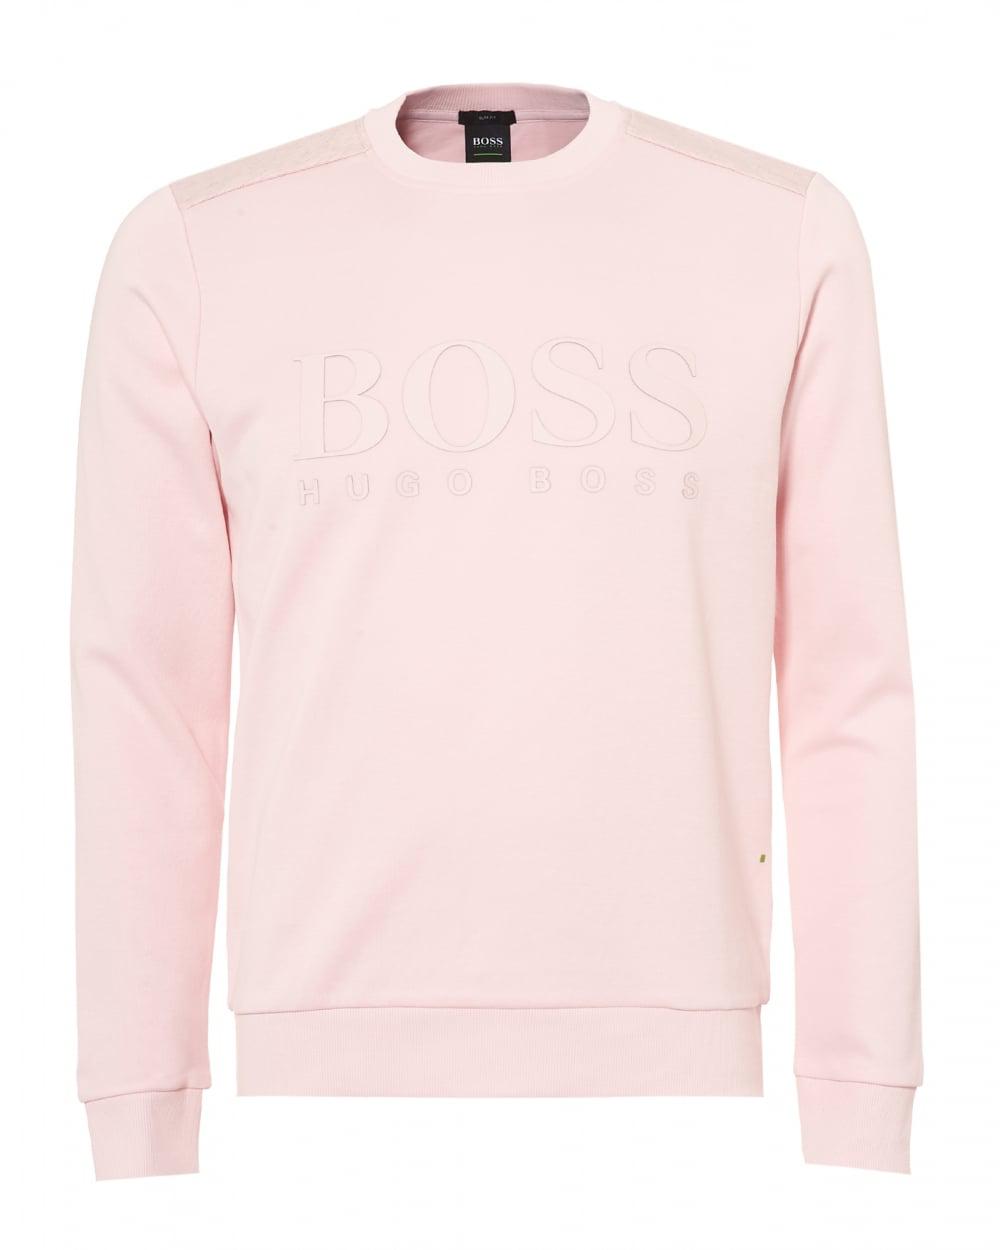 hugo boss pink jumper